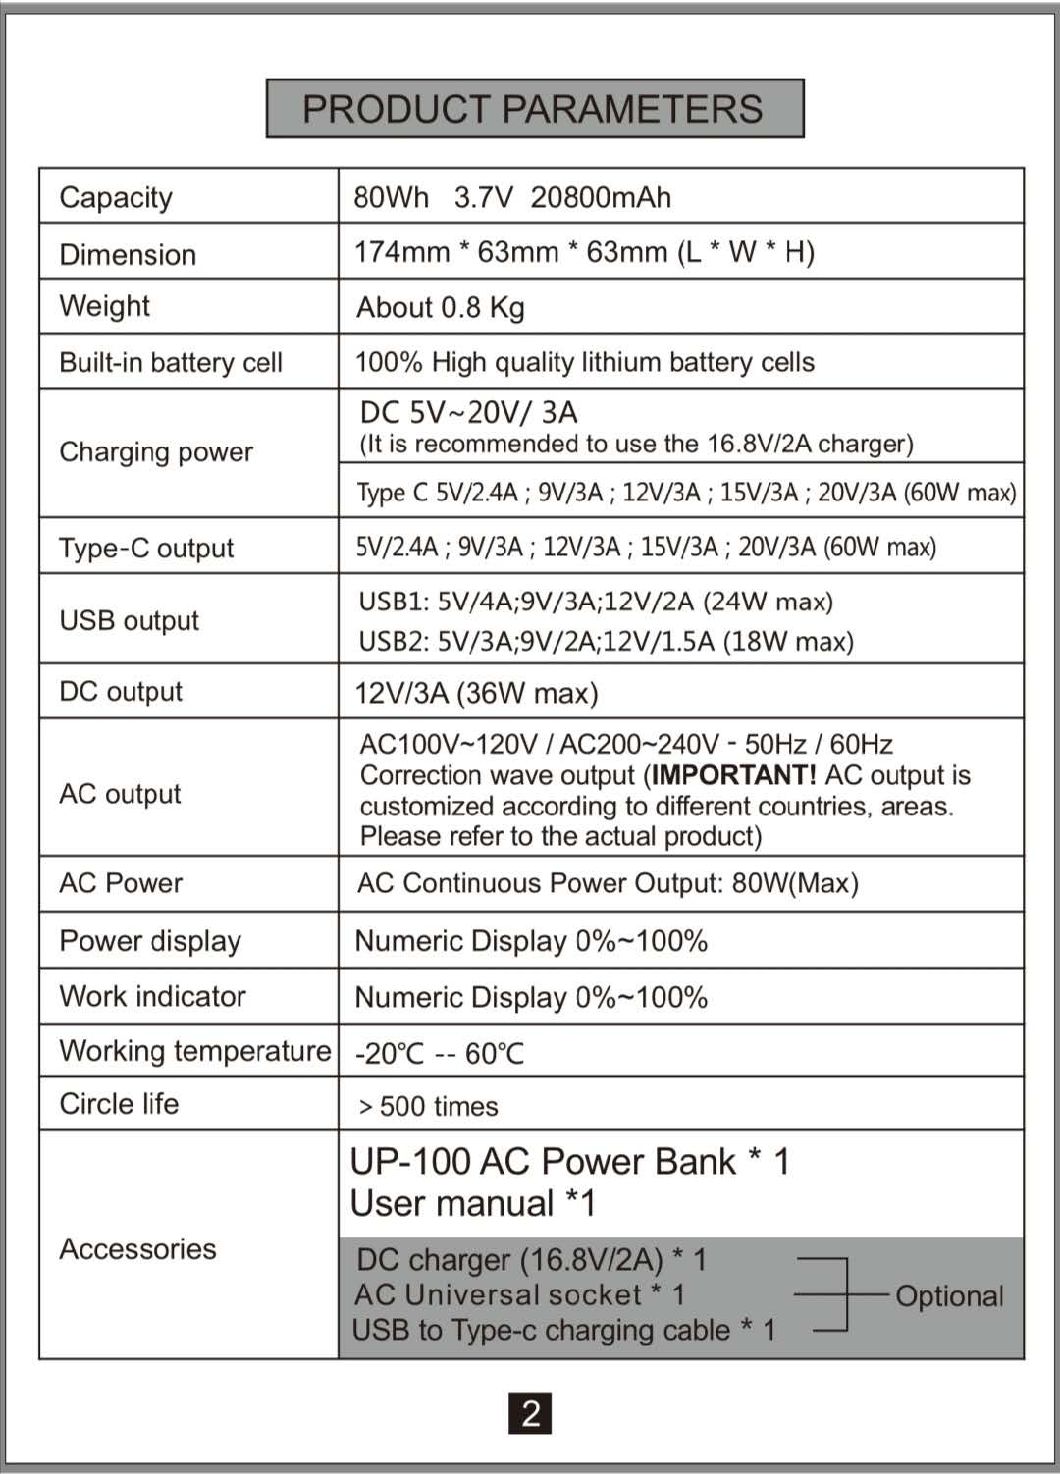 Home Haute grande capacité 110V / 220V AC DC Sortie Portable Power Bank 20000 MAH Chargement Powerbank pour ordinateur portable